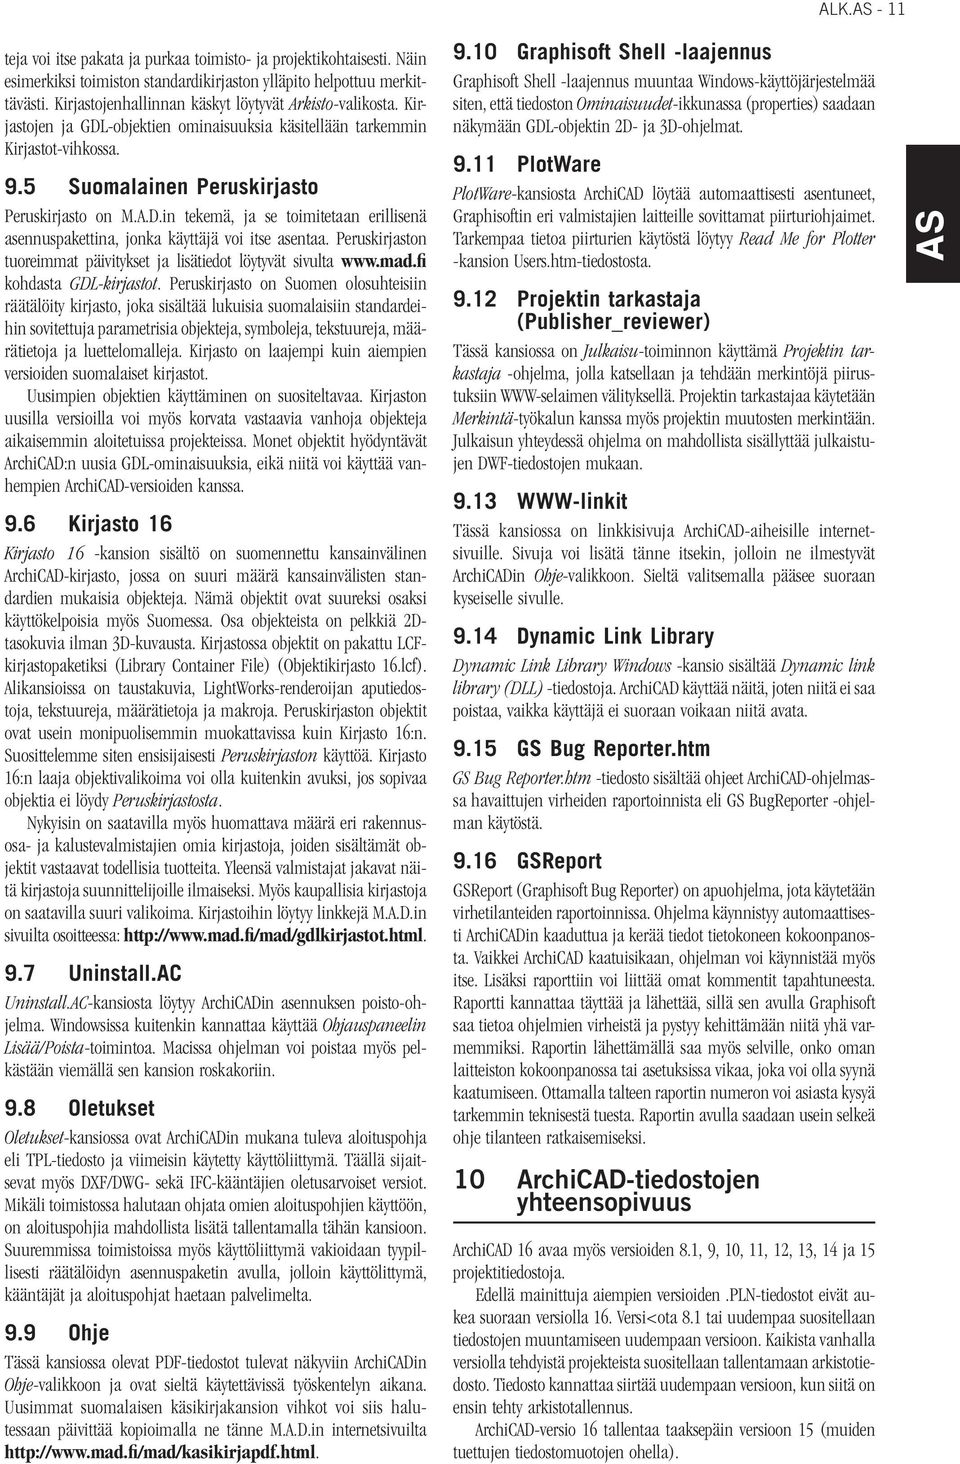 Peruskirjaston tuoreimmat päivitykset ja lisätiedot löytyvät sivulta www.mad.fi kohdasta GDL-kirjastot.